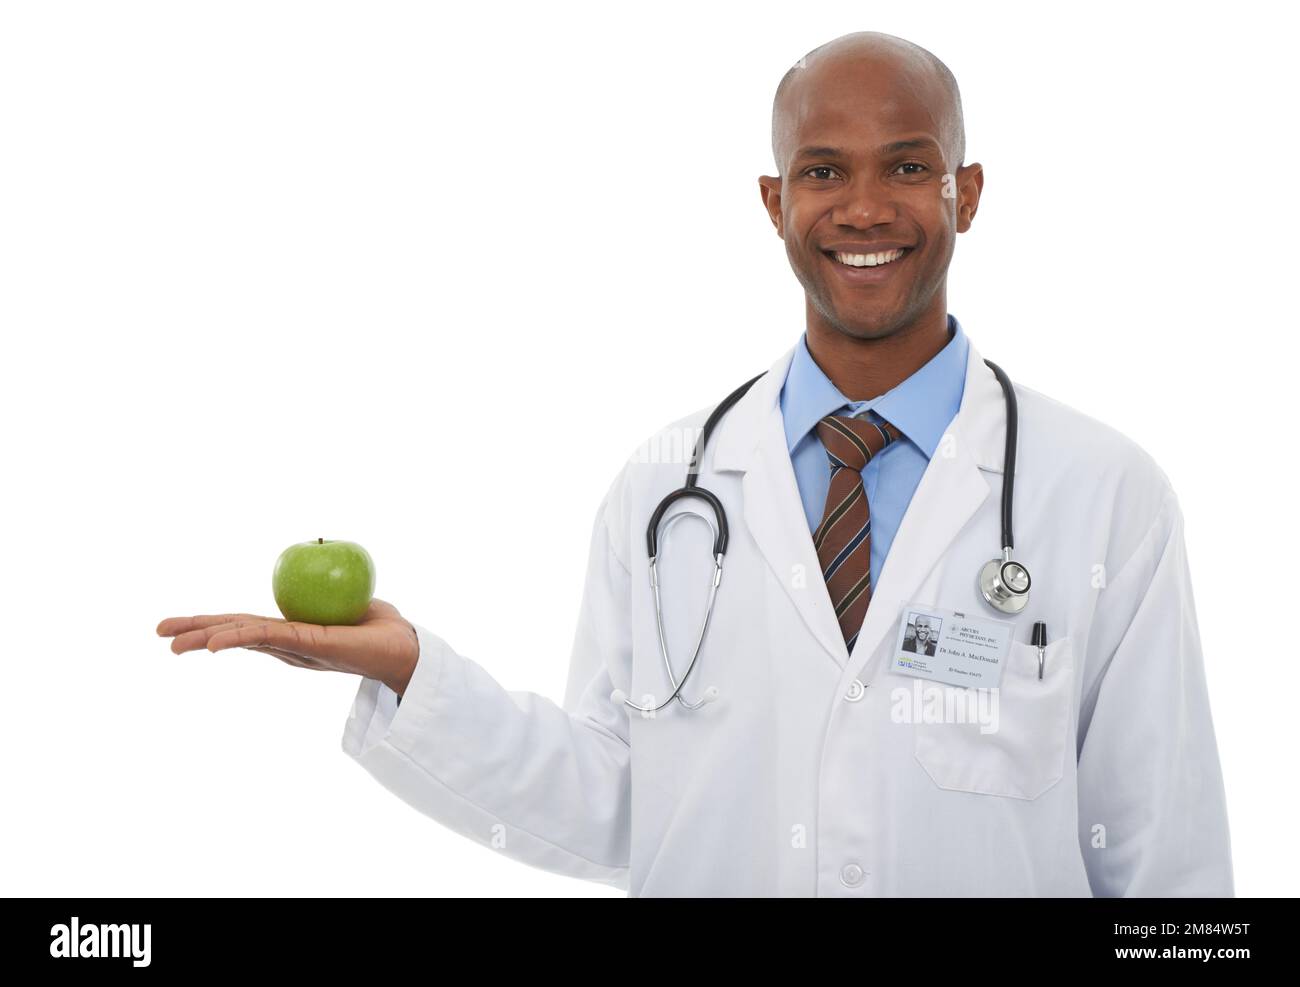 Denken Sie daran, eine gesunde Ernährung aufrecht zu erhalten. Zugeschnittenes Studiobild eines jungen Arztes mit einem Apfel. Stockfoto